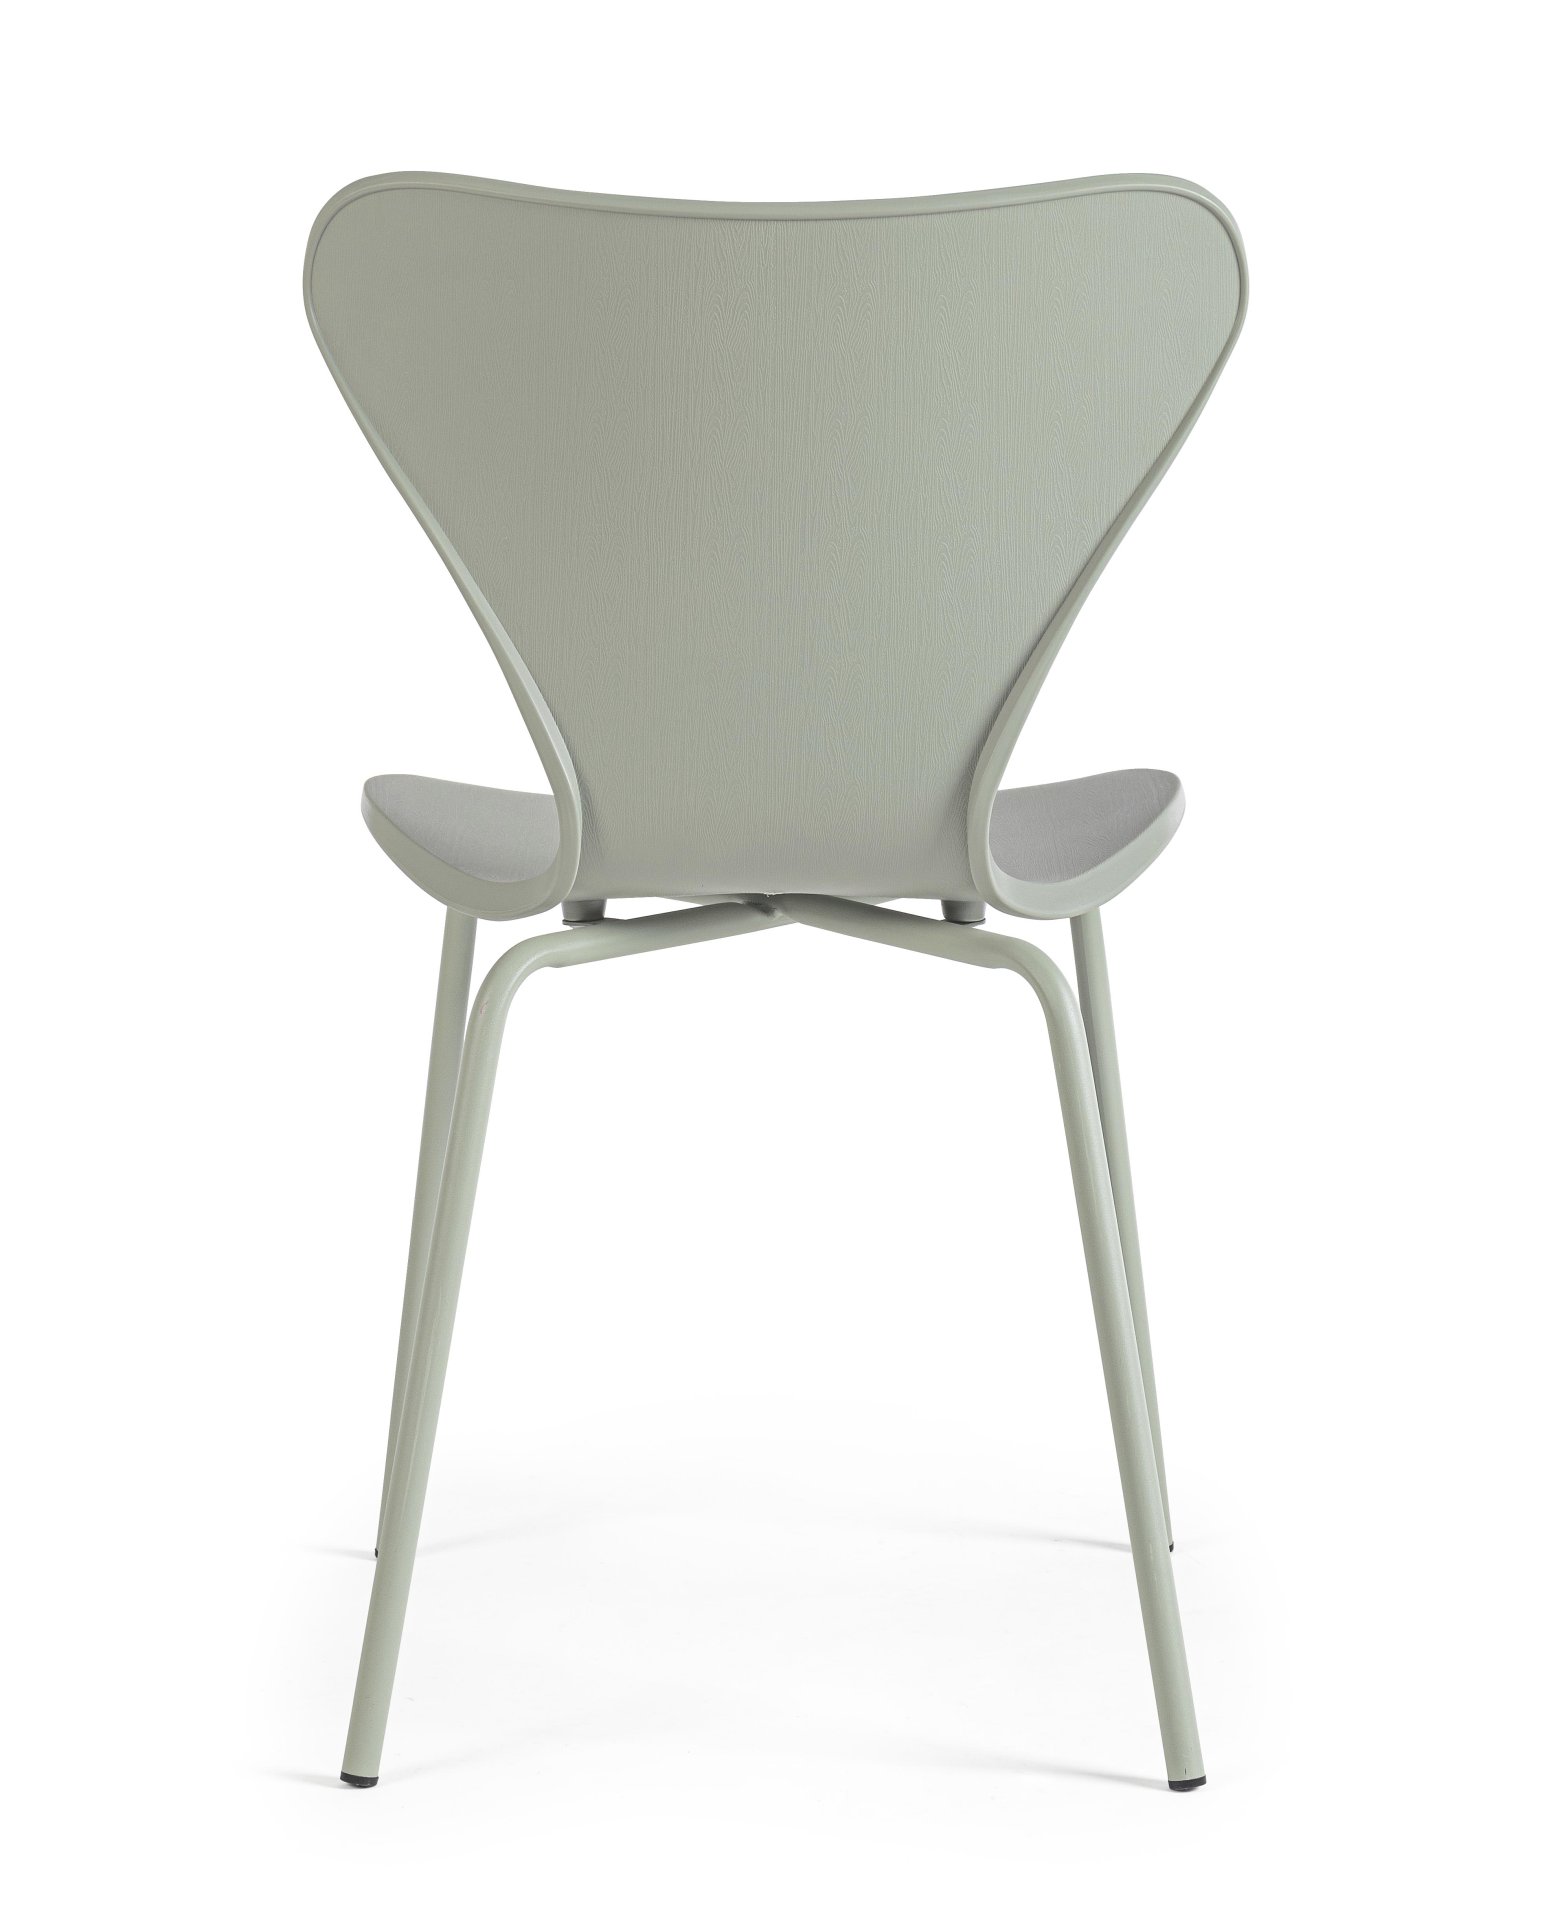 Der Stuhl Tessa überzeugt mit seinem modernem Design. Gefertigt wurde der Stuhl aus Kunststoff, welcher einen grünen Farbton besitzt. Das Gestell ist aus Metall und ist in einer grünen Farbe. Die Sitzhöhe beträgt 45 cm.